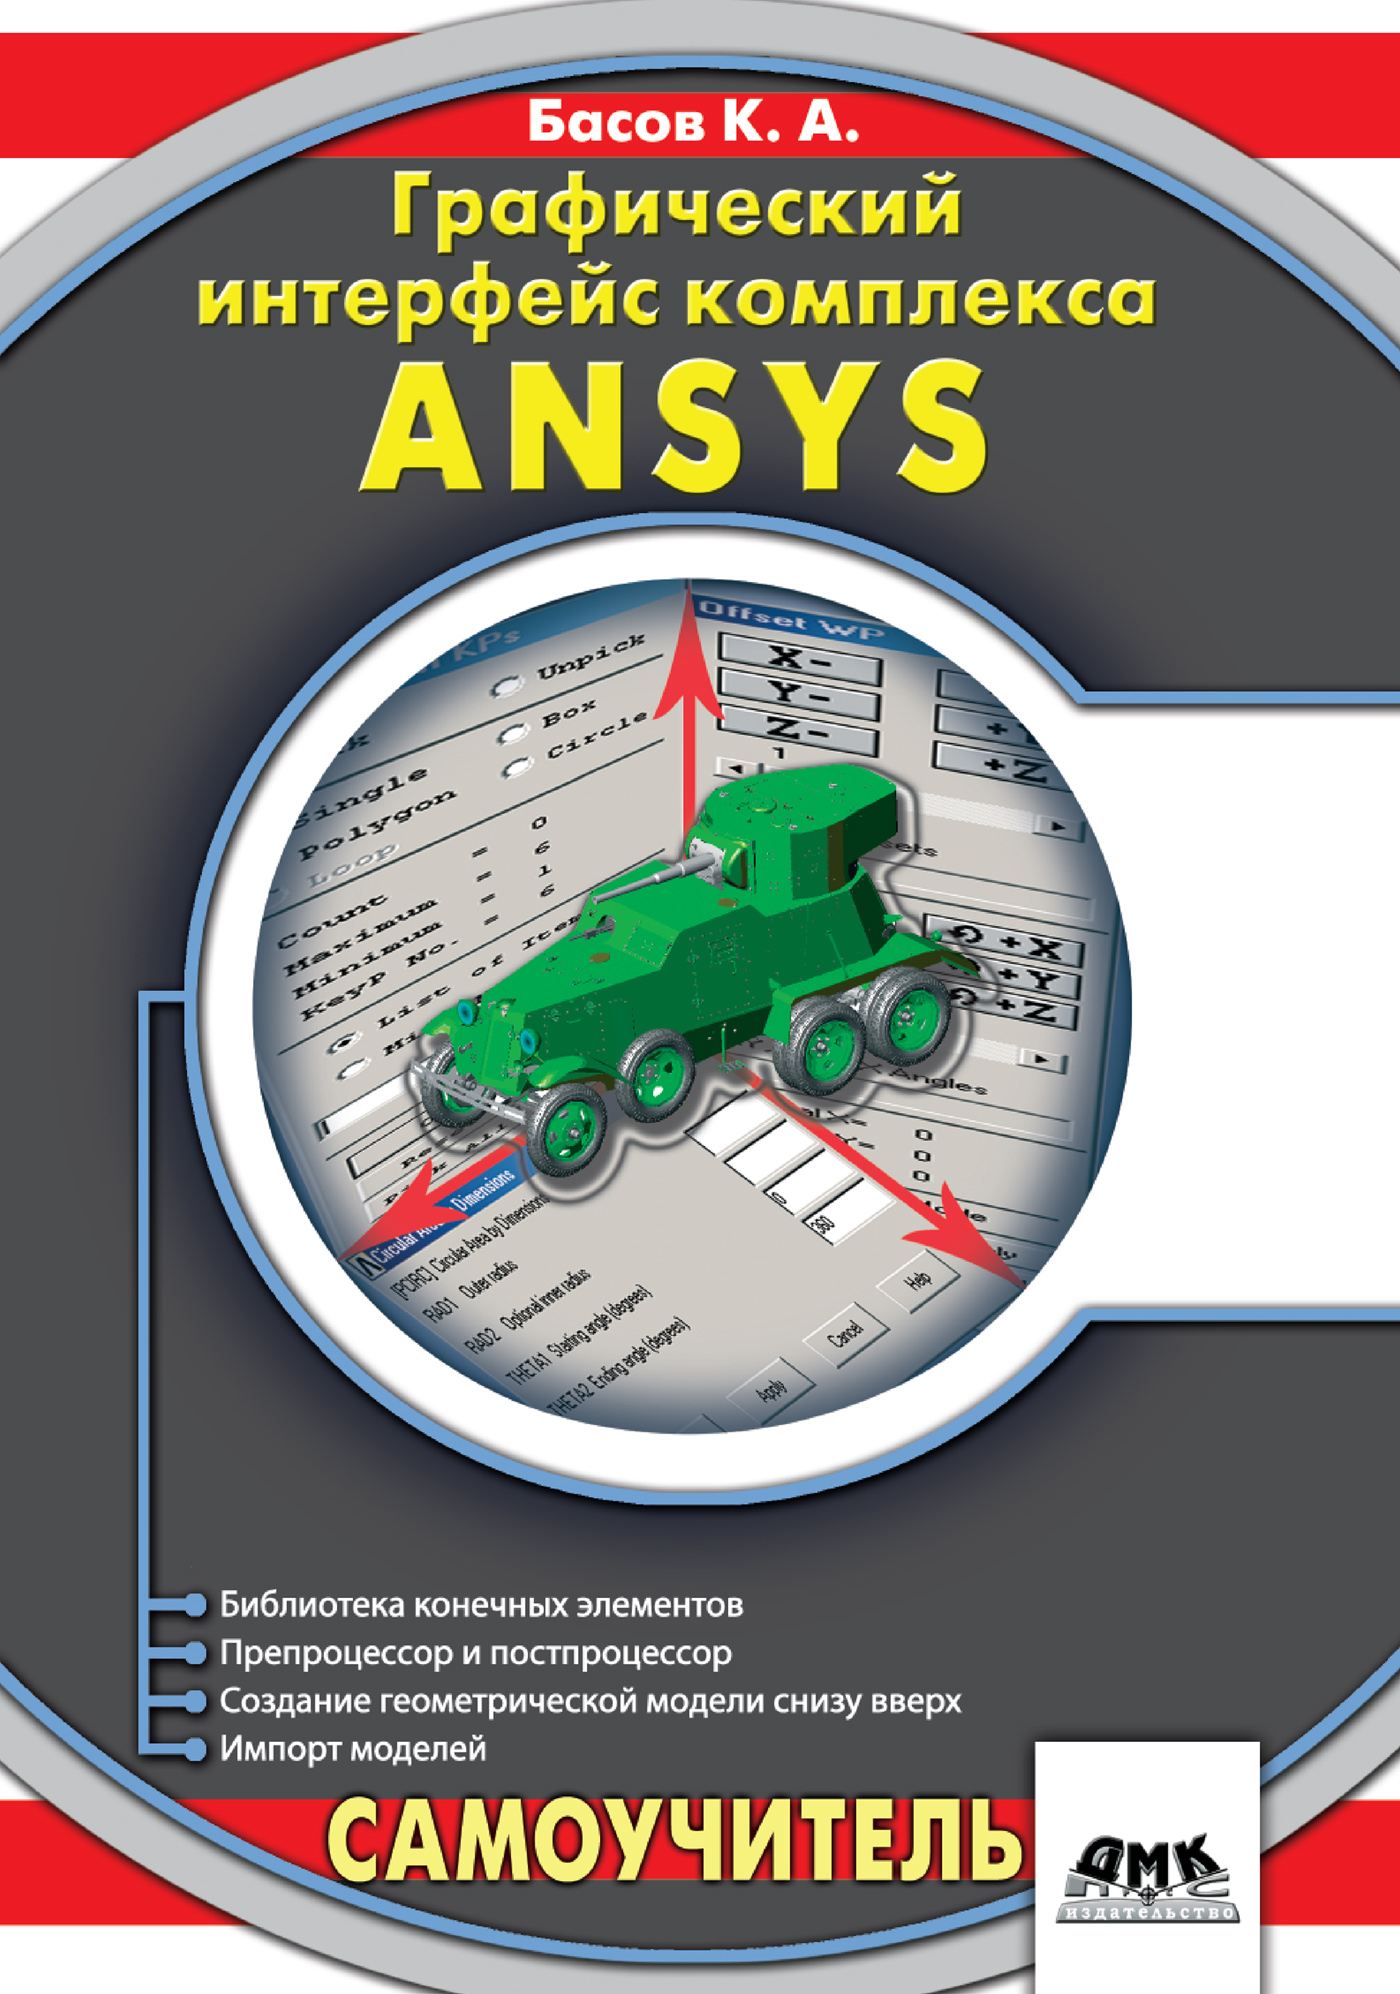 Книга  Графический интерфейс комплекса ANSYS созданная К. А. Басов может относится к жанру программы. Стоимость электронной книги Графический интерфейс комплекса ANSYS с идентификатором 429992 составляет 199.00 руб.